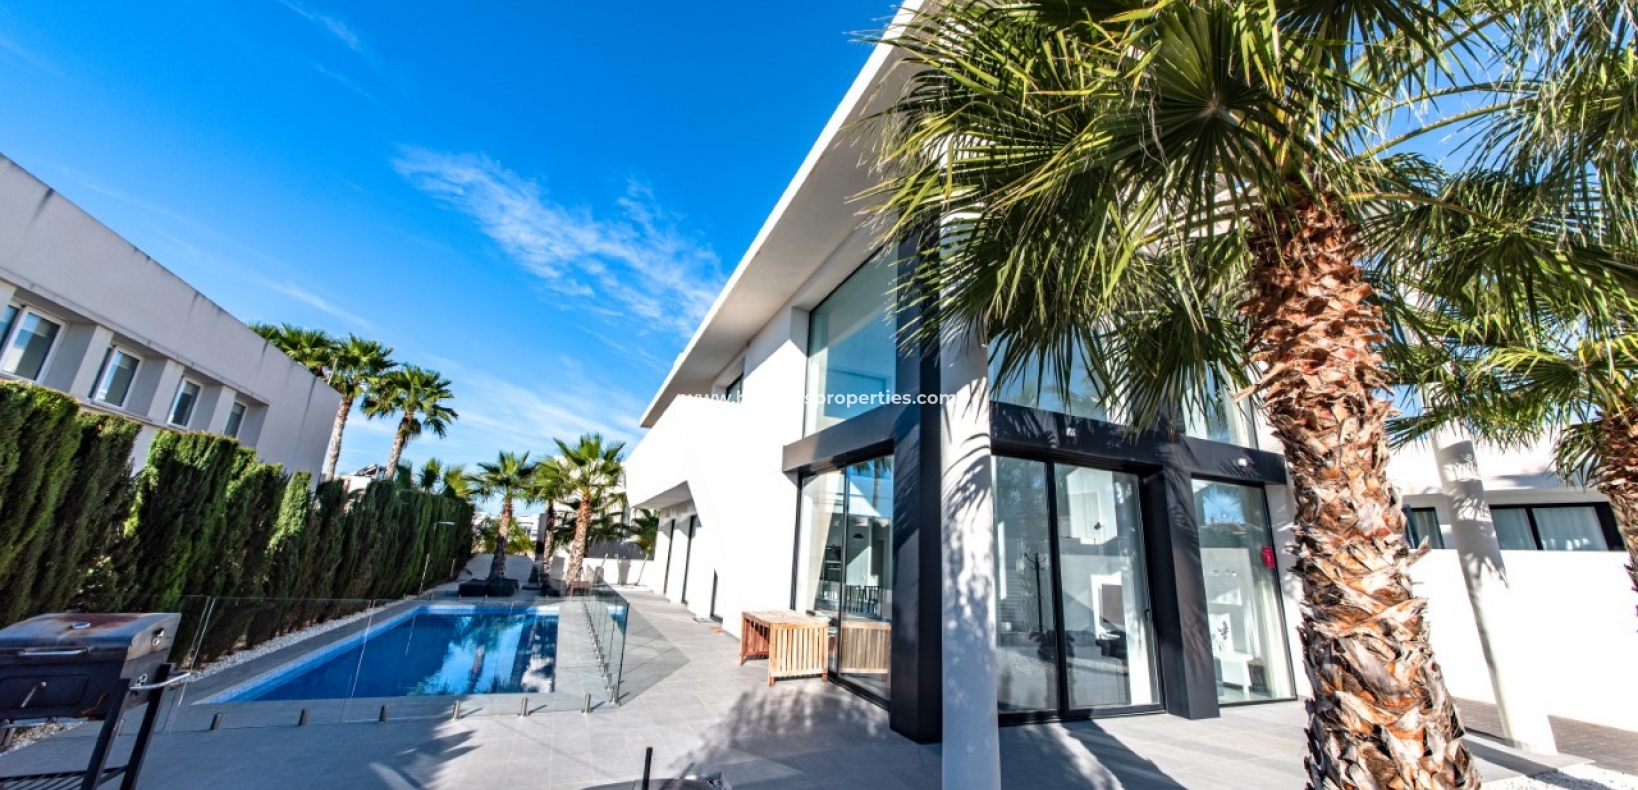 Property - New Build villa for sale in Urb La Marina